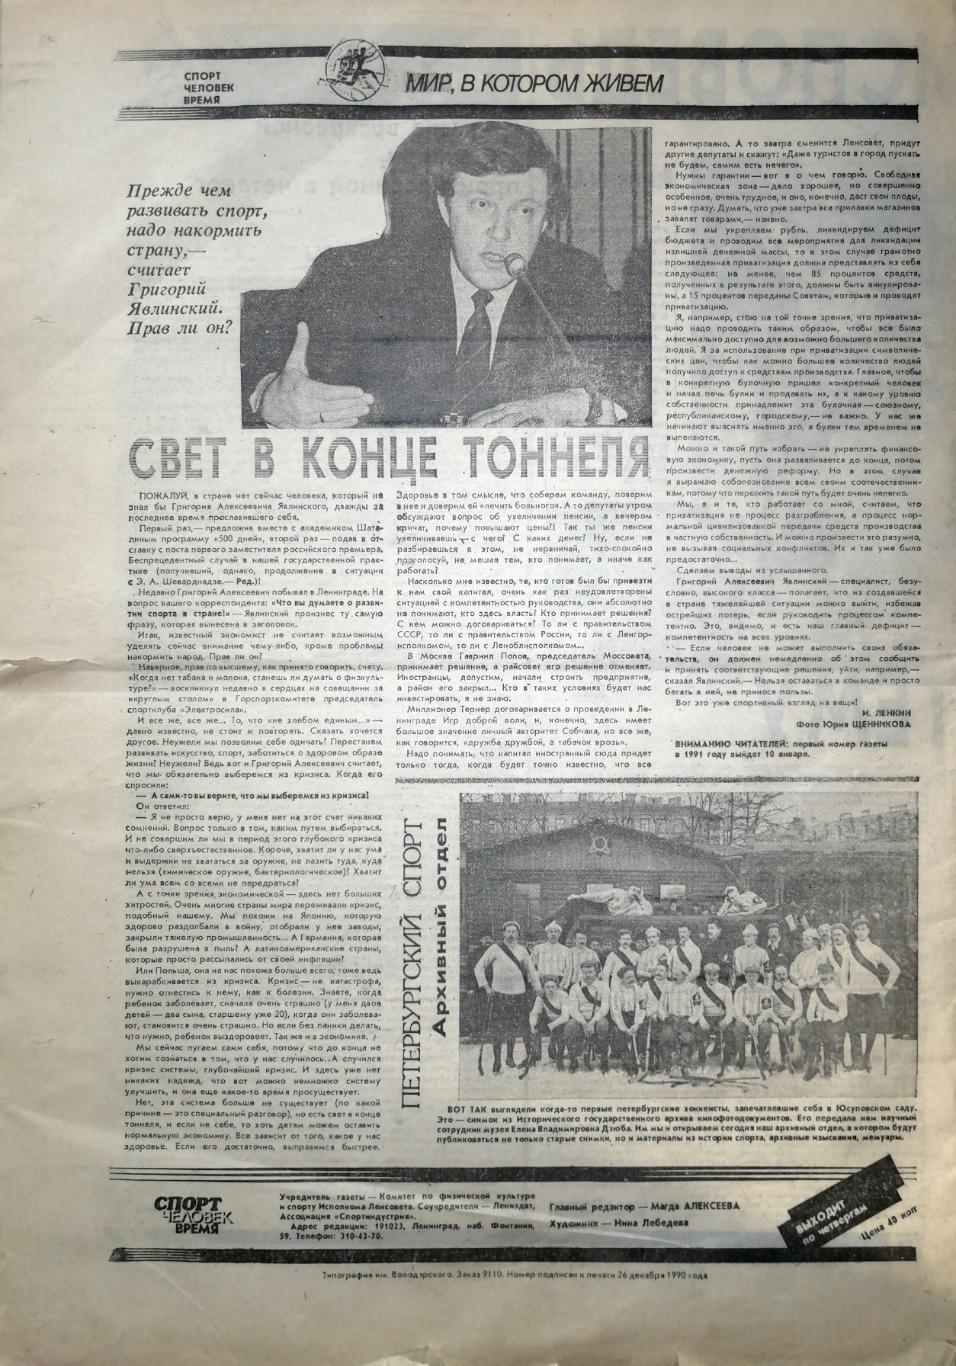 Спорт. Человек. Время (Ленинград). №00 (27.12.1990) 4